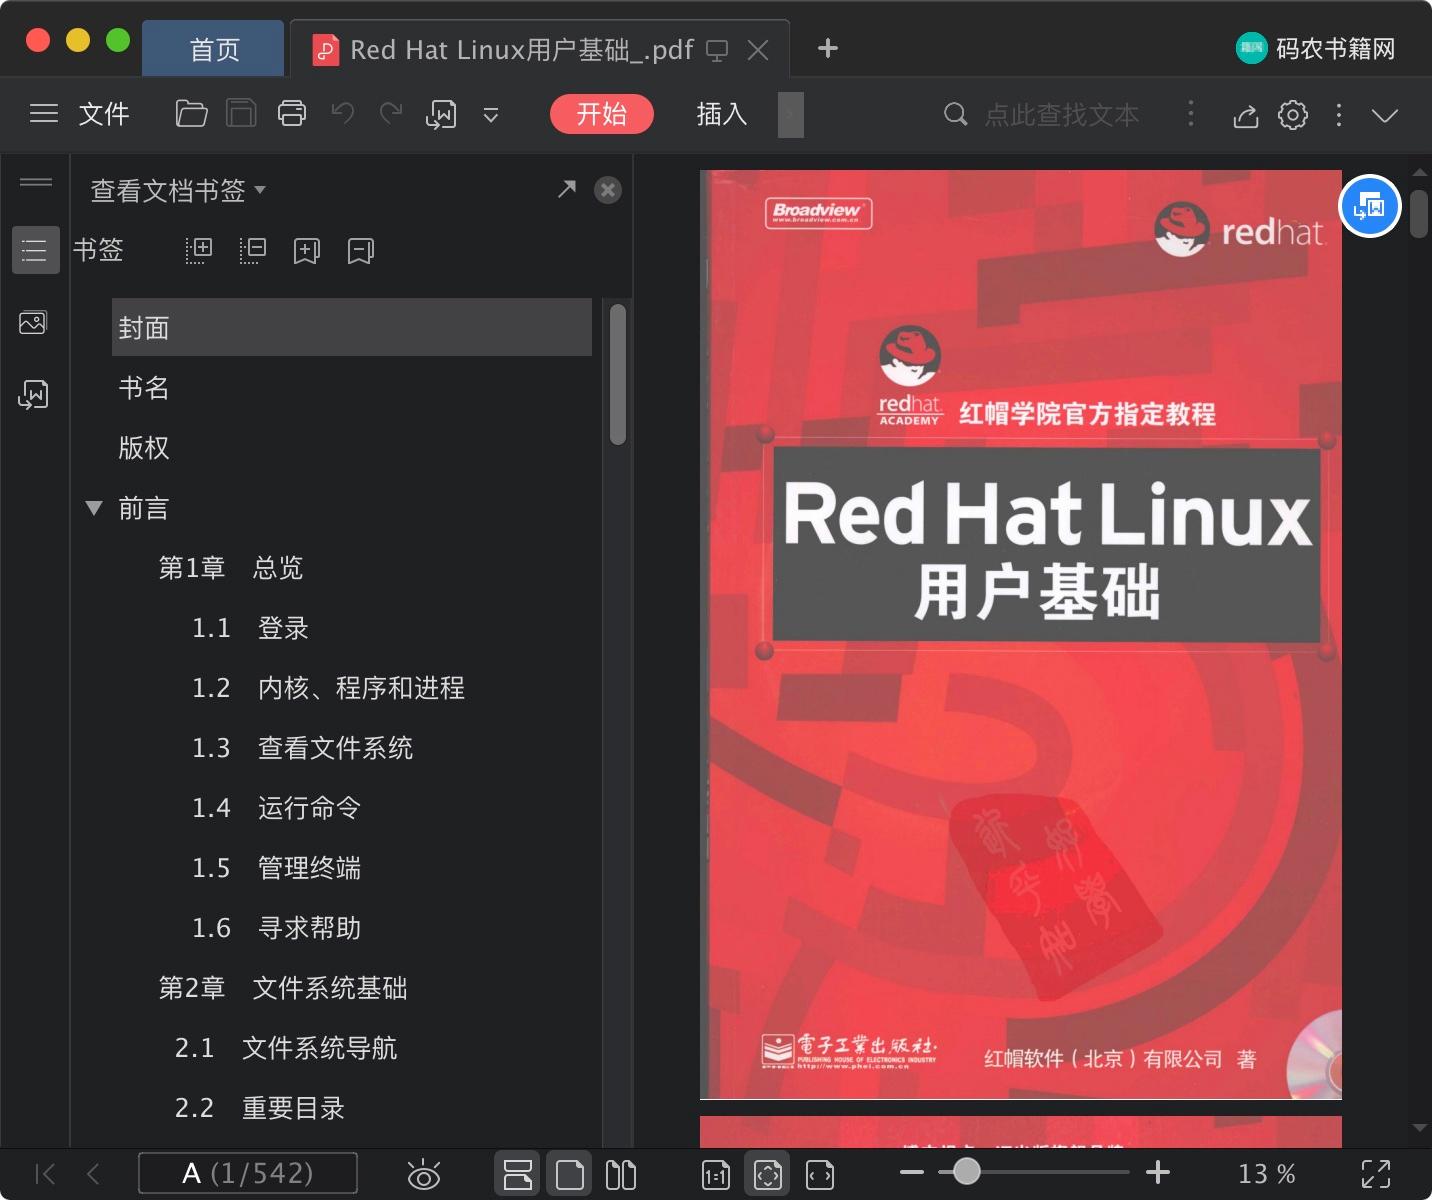 Red Hat Linux教程用户基础pdf电子书籍下载百度网盘